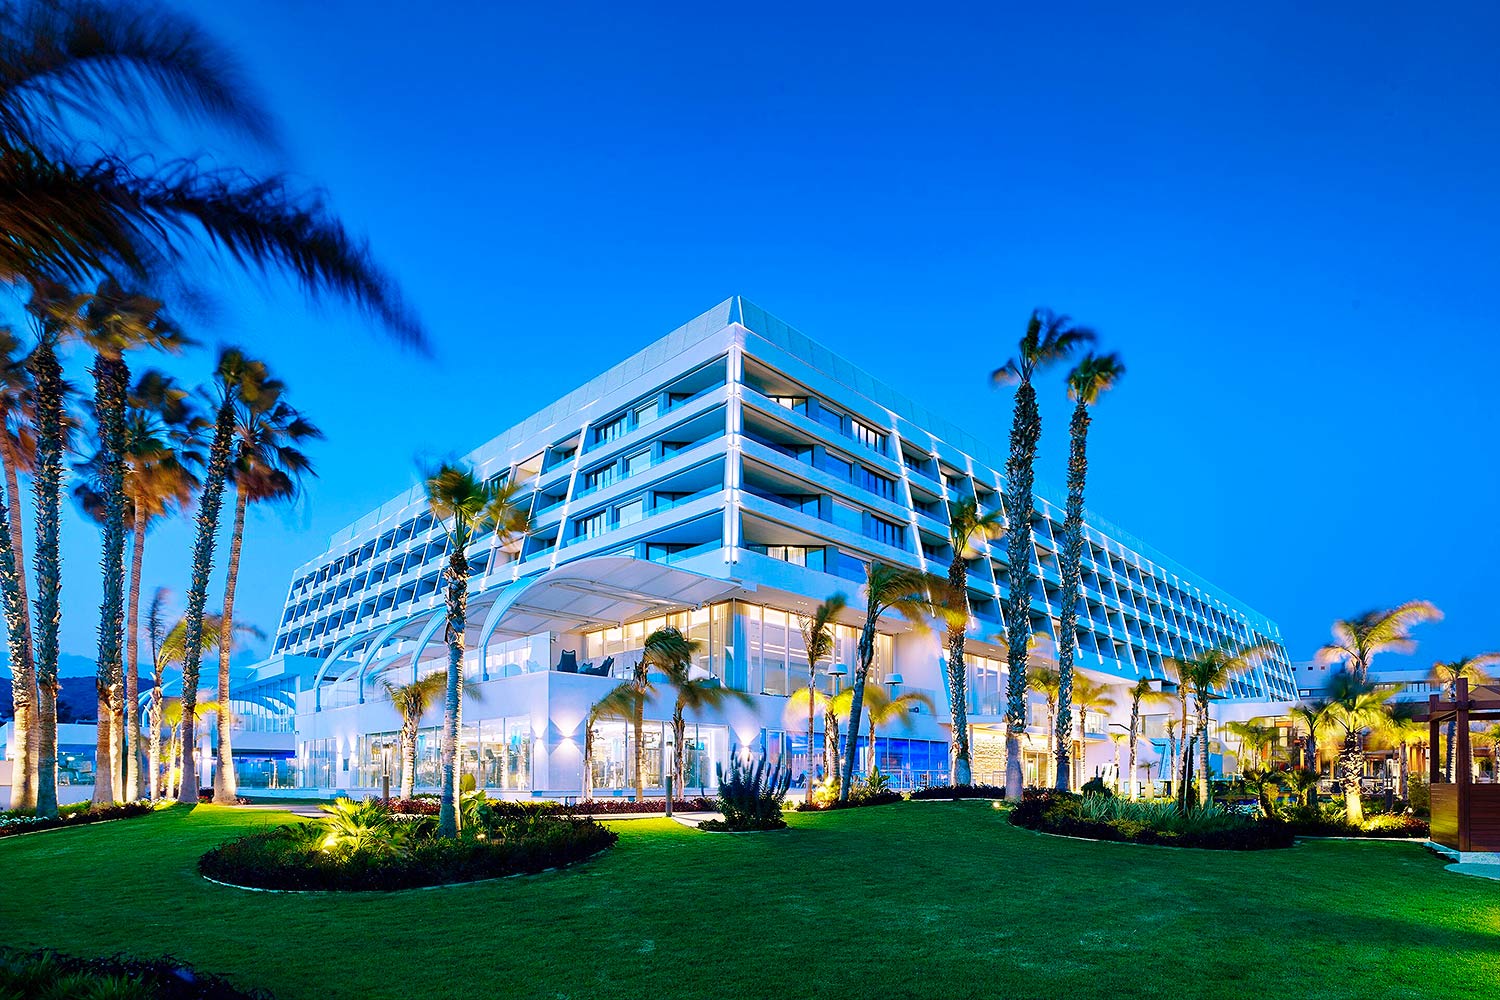 Vue extérieure du Parklane Resort and Spa, vue en angle, entourée d'une pelouse et de palmiers